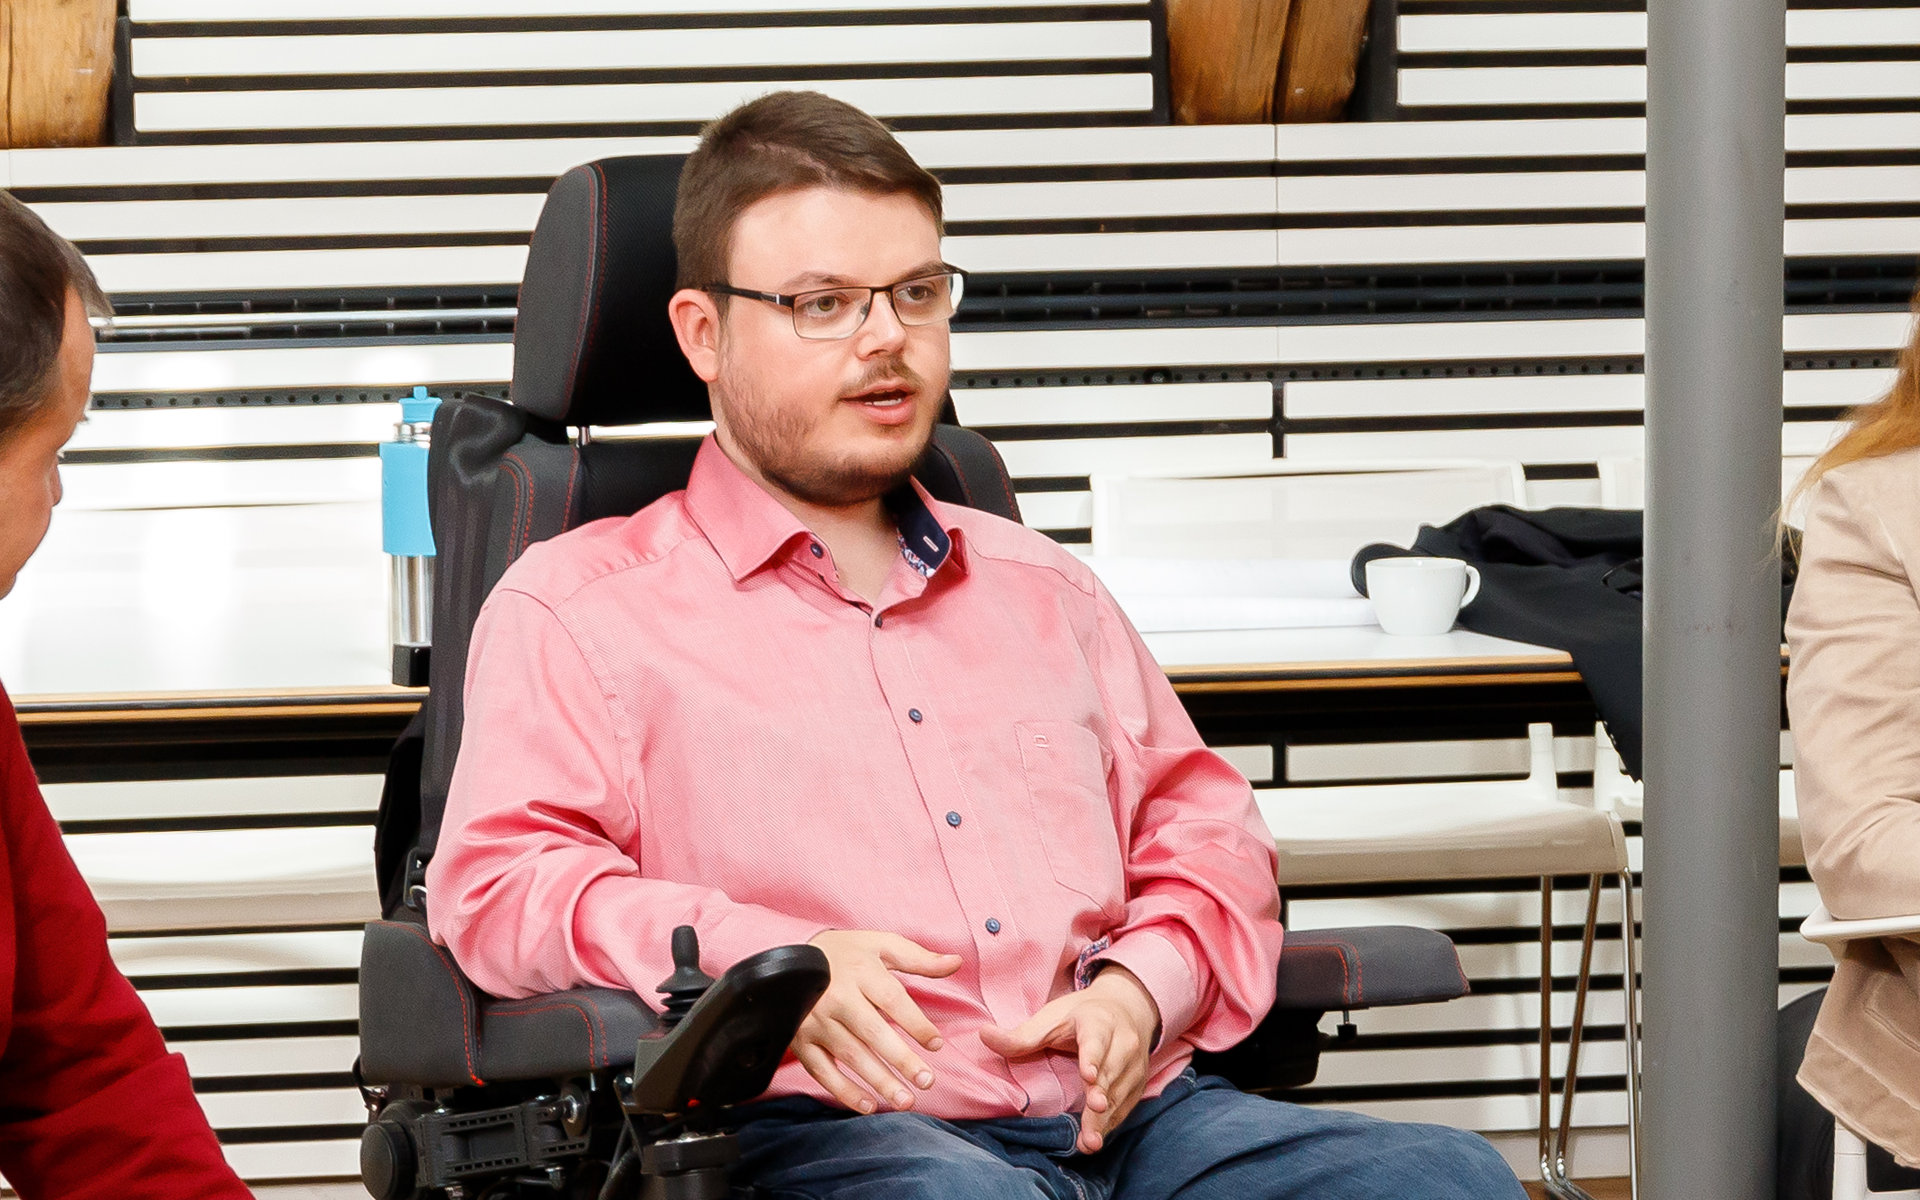 Constantin Grosch sitzt mit rotem Hemd im Rollstuhl und gestikuliert. Links und rechts sieht man Menschen sitzen.